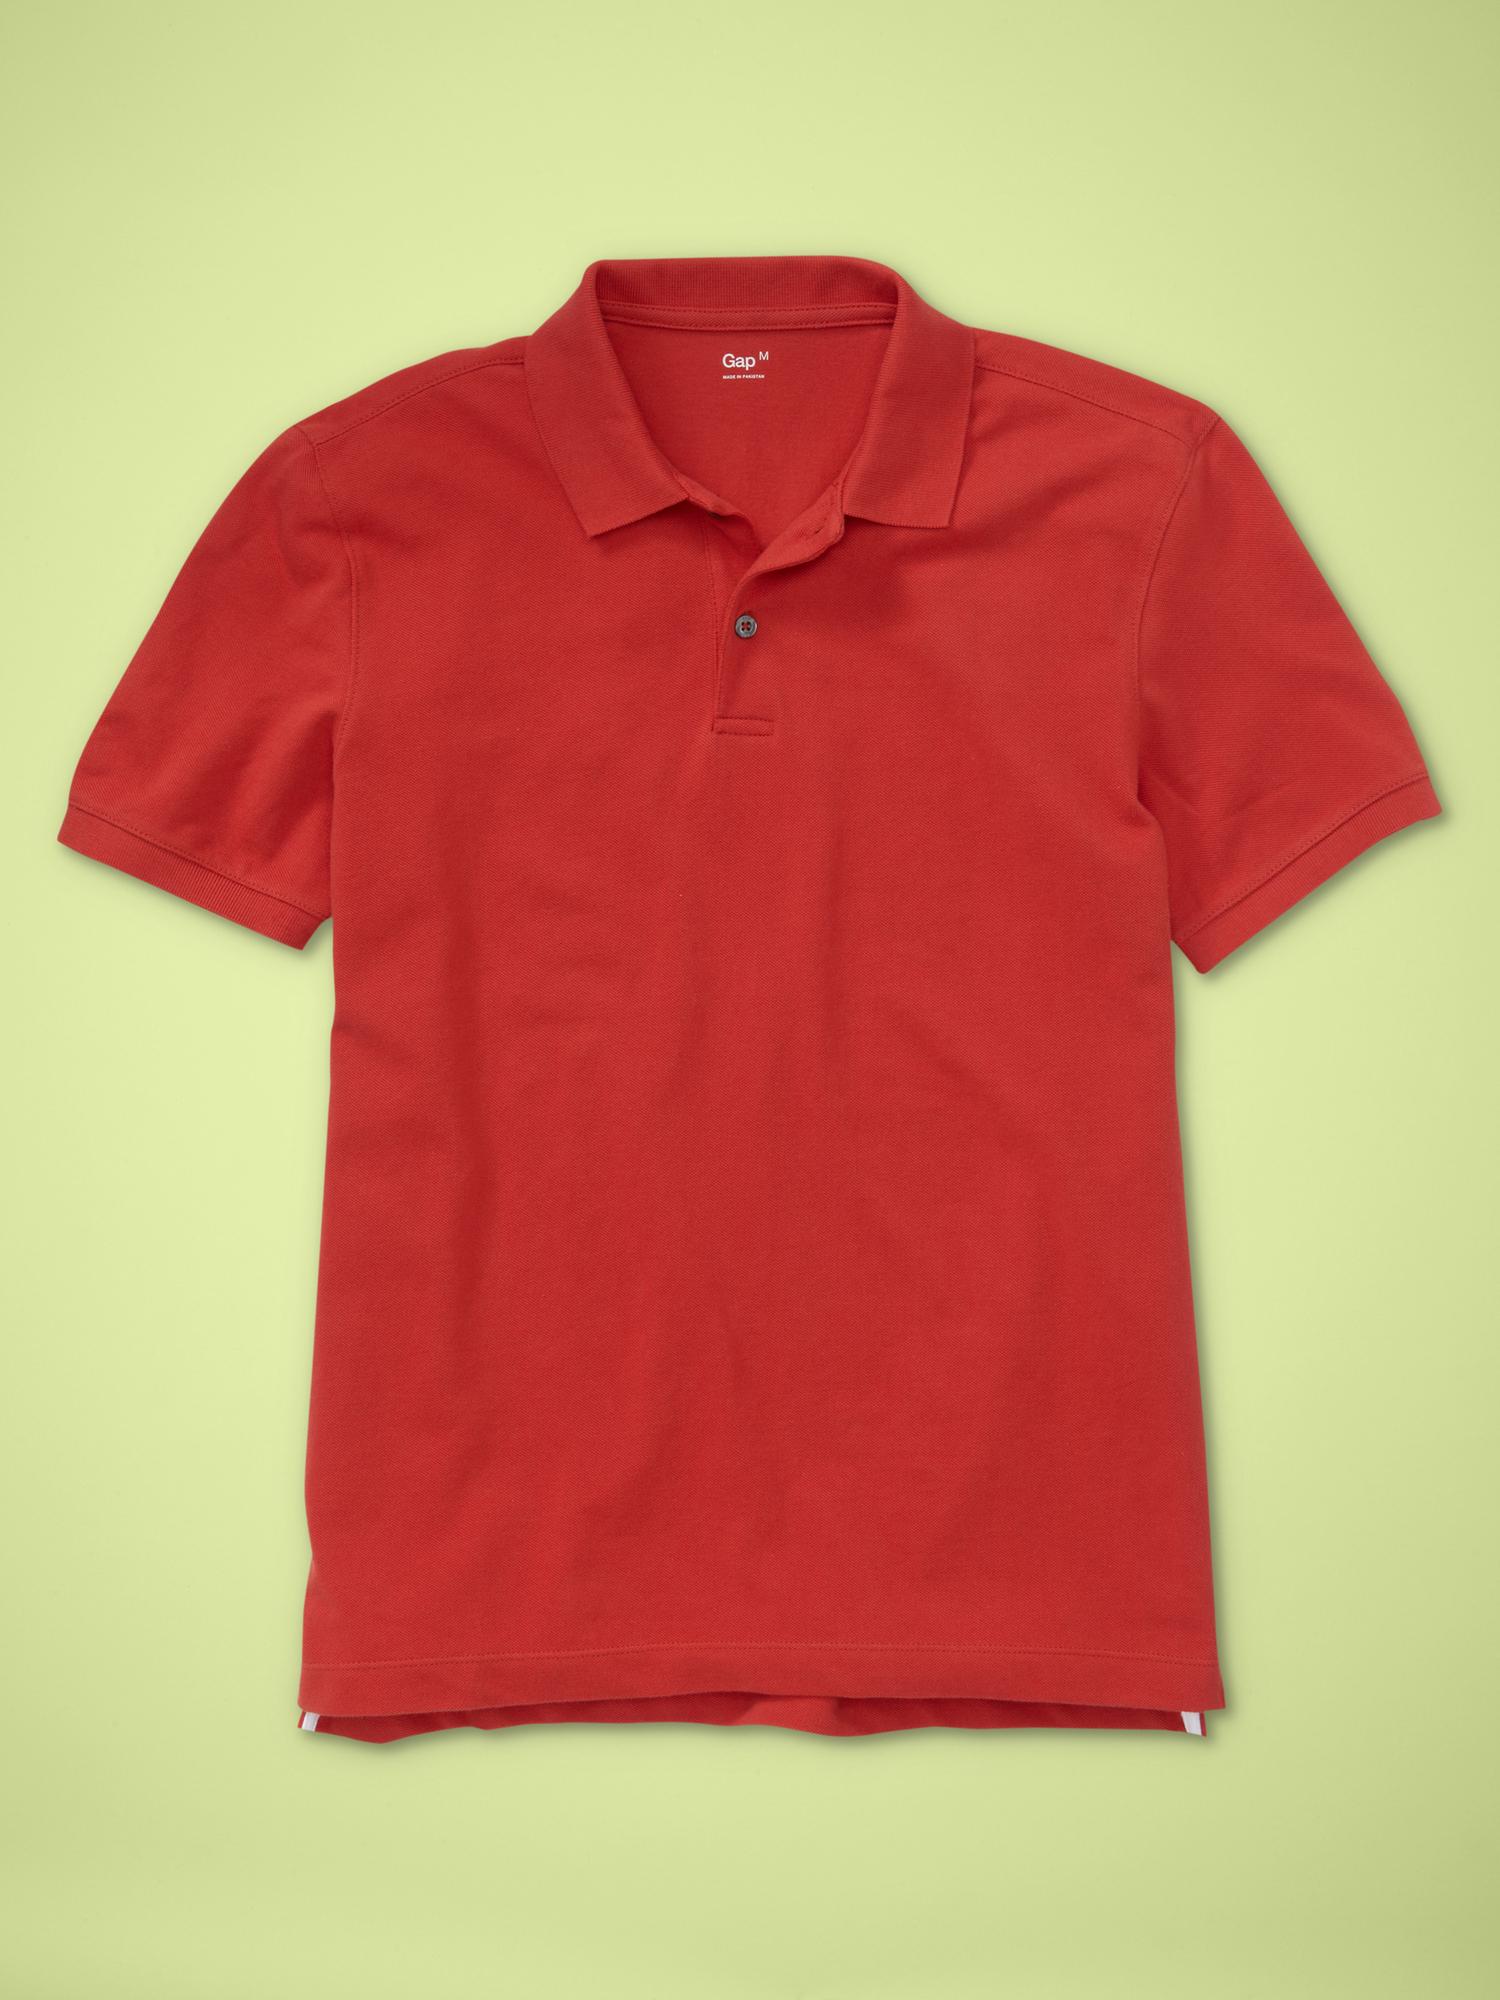 Gap Men's Pique Polo Shirt